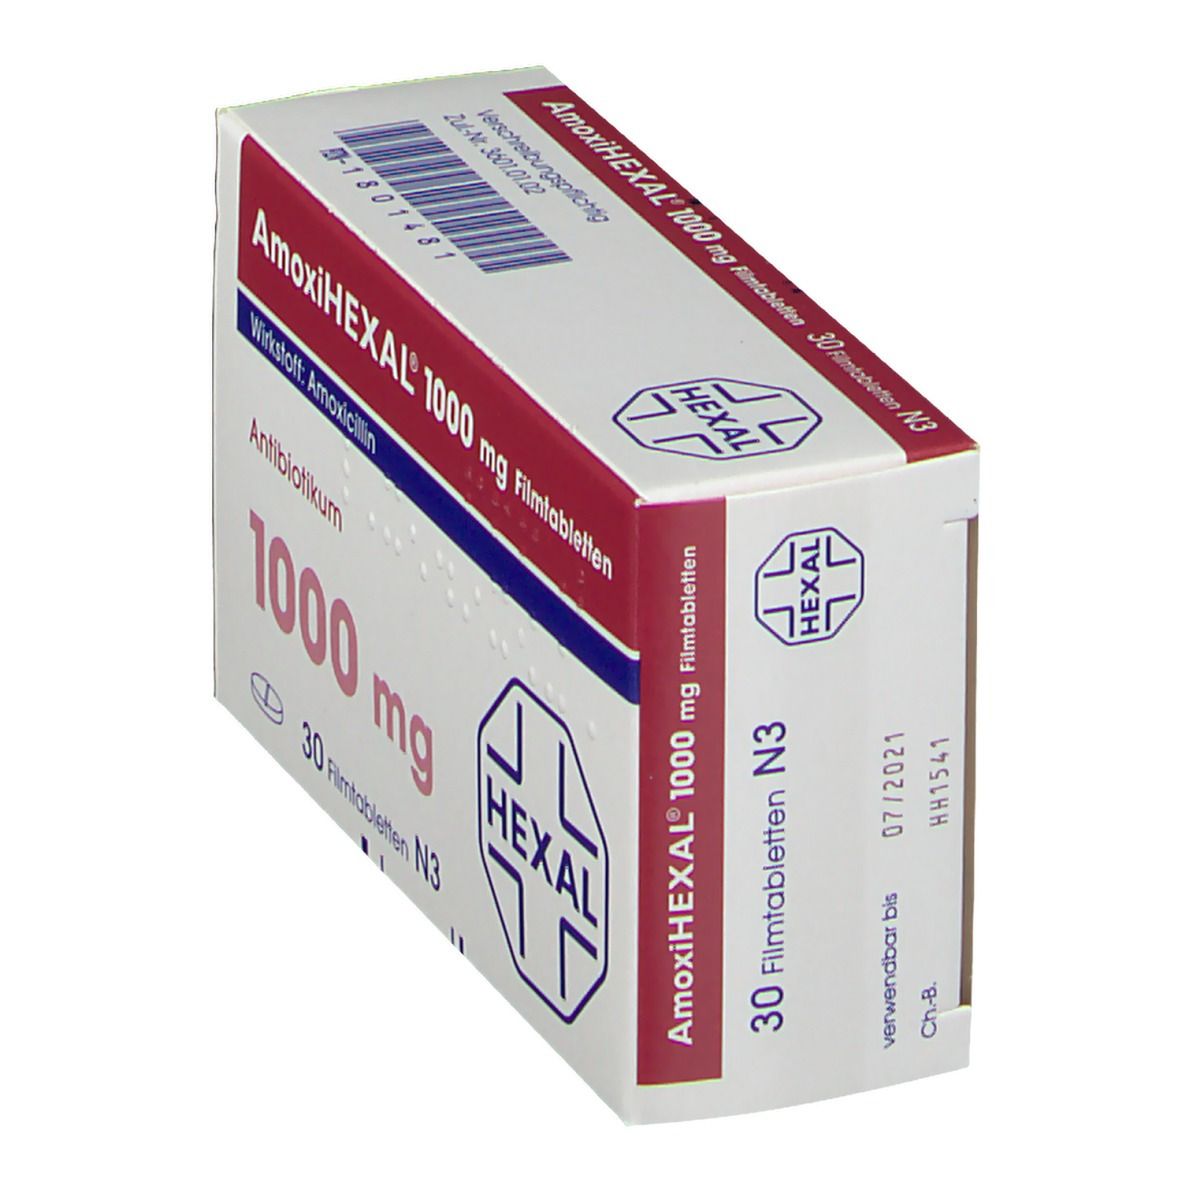 AmoxiIHEXAL® 1000 mg